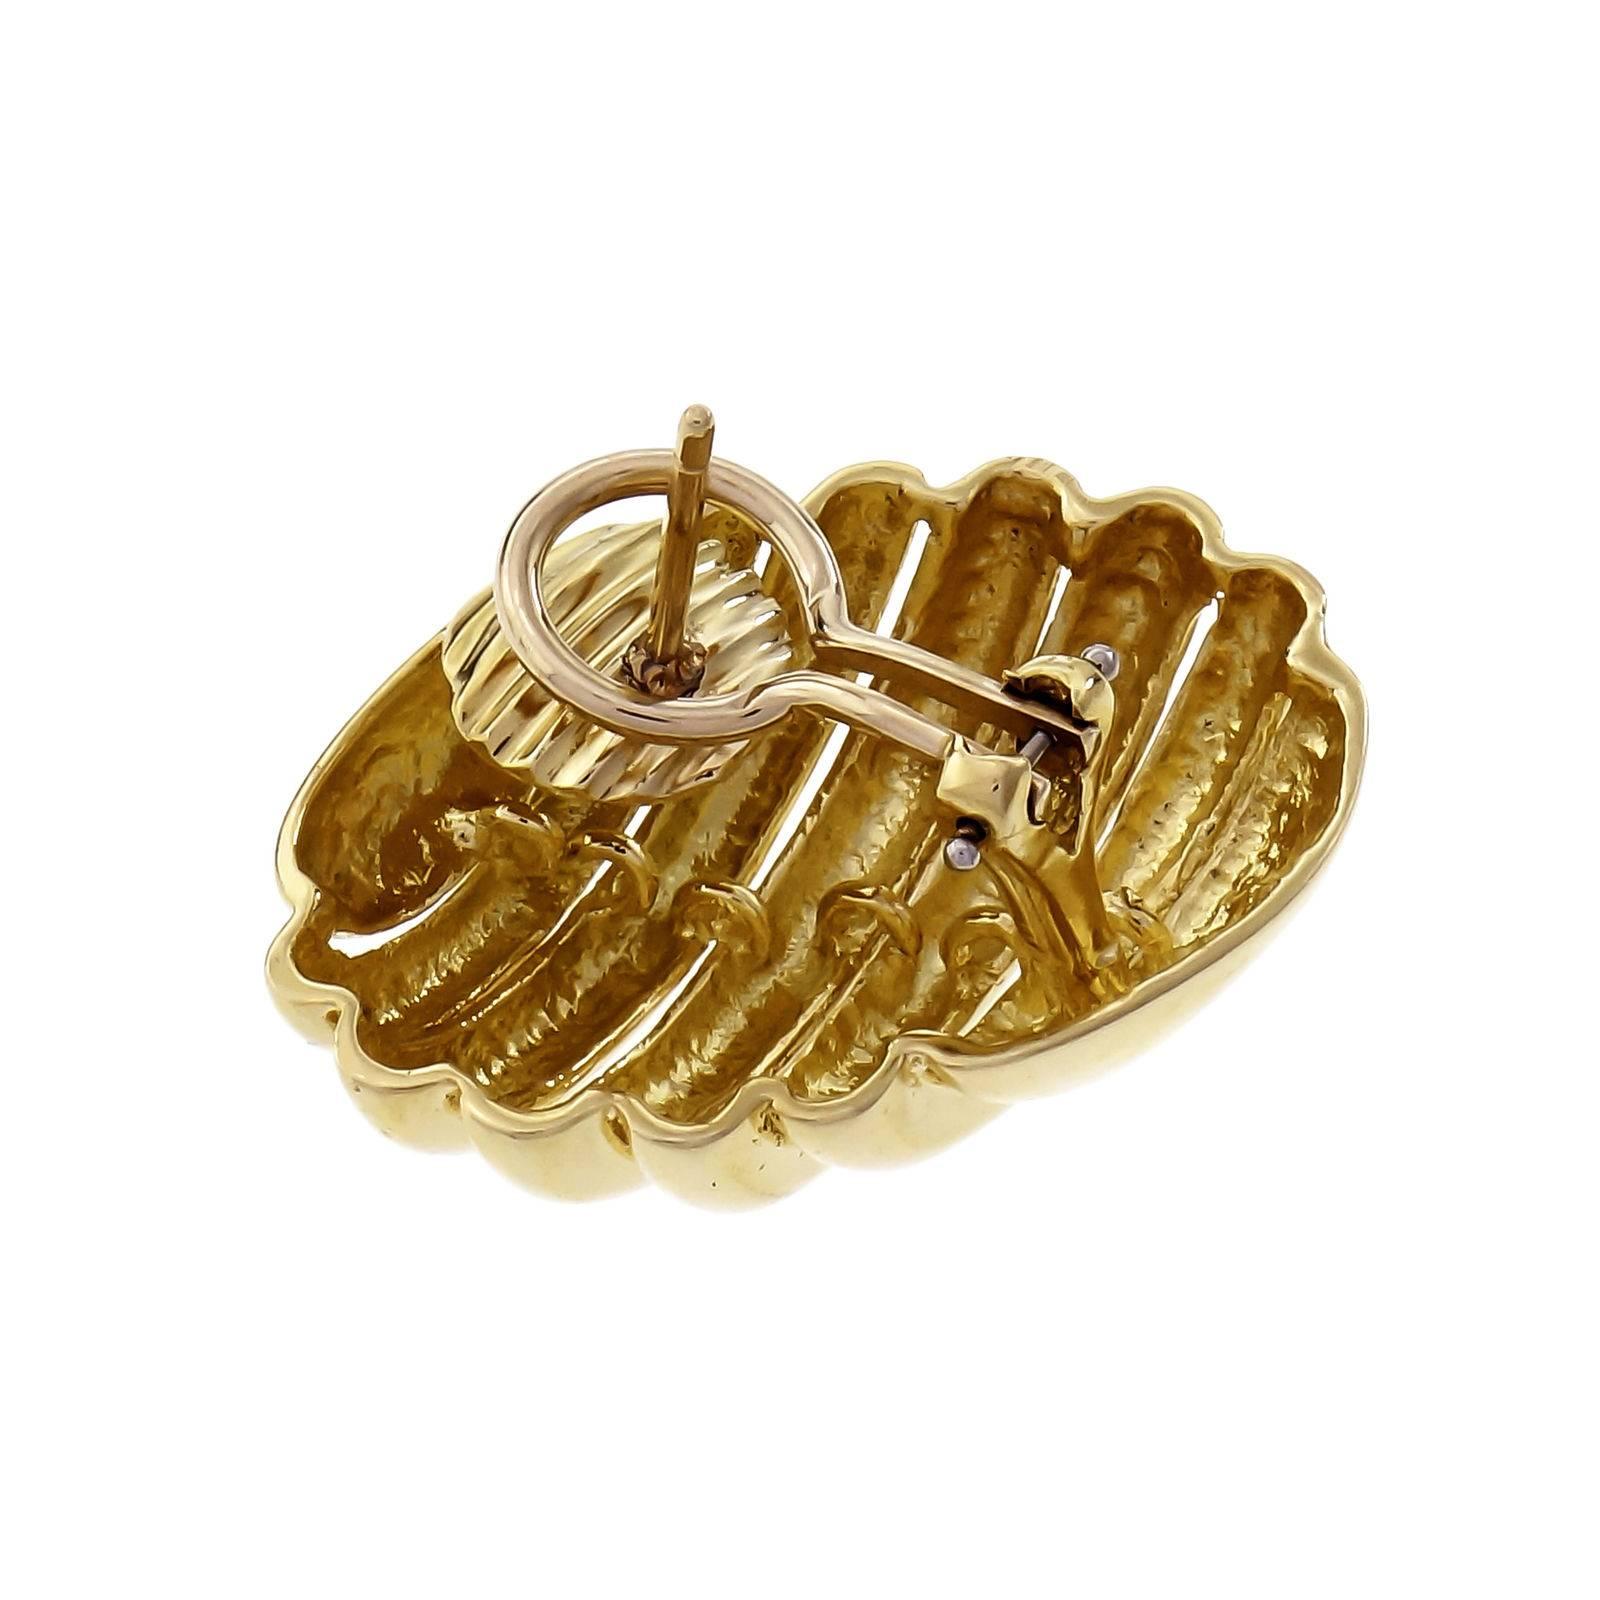 Tiffany & Co - Boucles d'oreilles à clip en or jaune 18 carats avec un design de crevette de grande taille. 

Or jaune 18k
De haut en bas : 17,34 mm ou 0,68 pouce
Largeur : 28,06 mm ou 1,1 pouce
Profondeur : 9,12 mm
17.9 grammes
Testé et estampillé